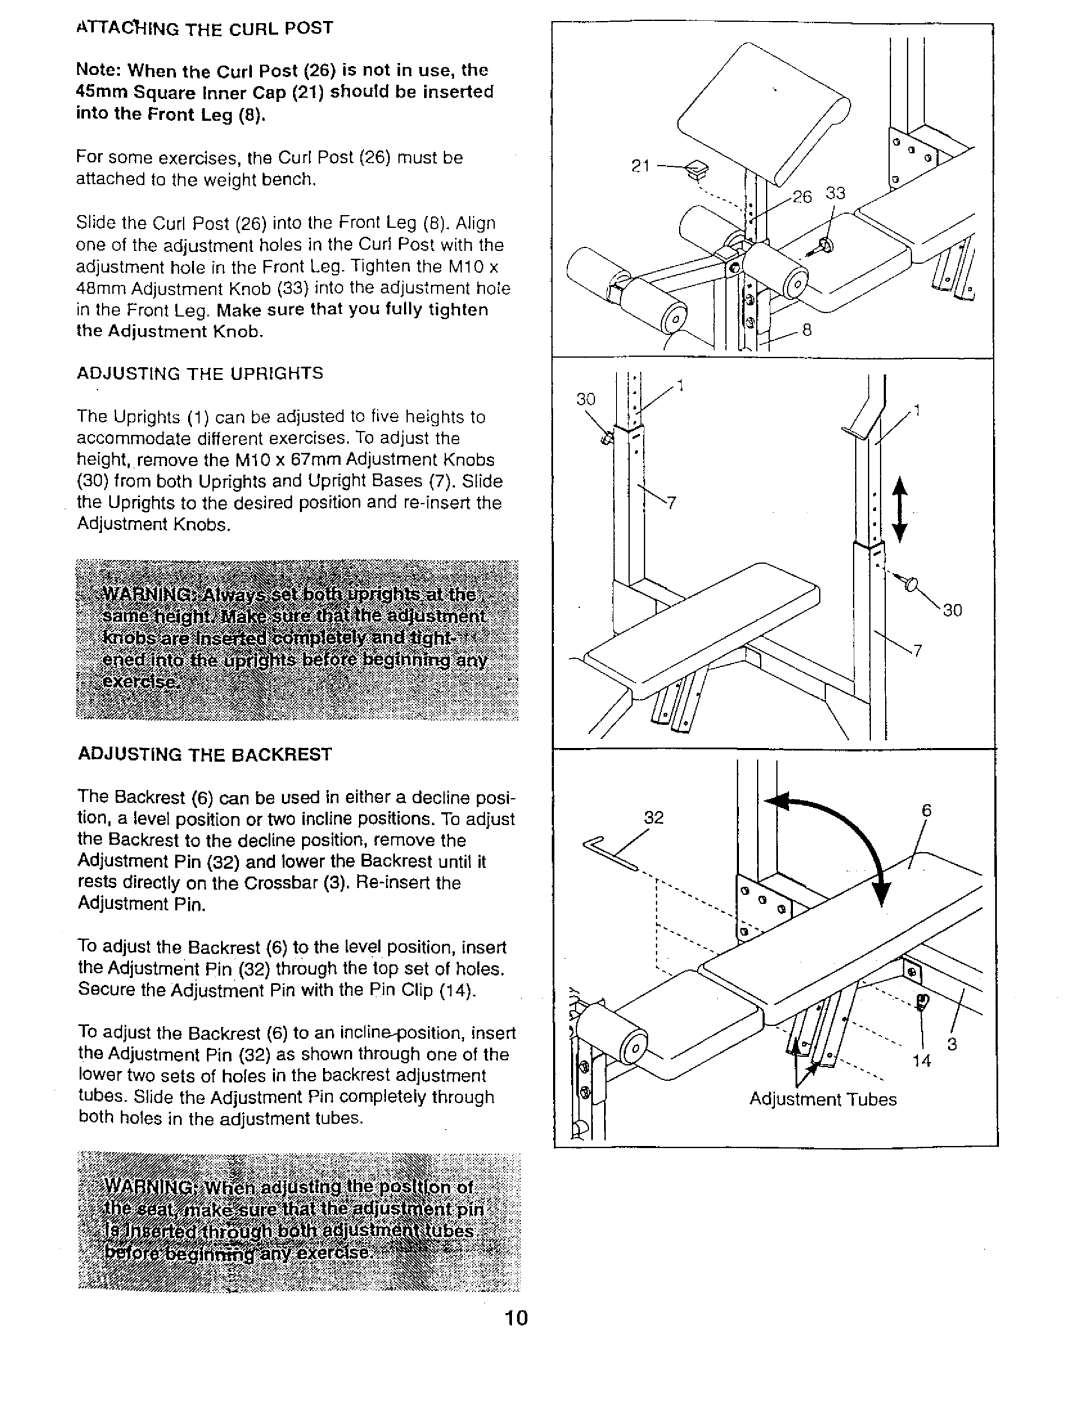 Weider 831,150,741 user manual iii`7, Adjusting The Backrest 